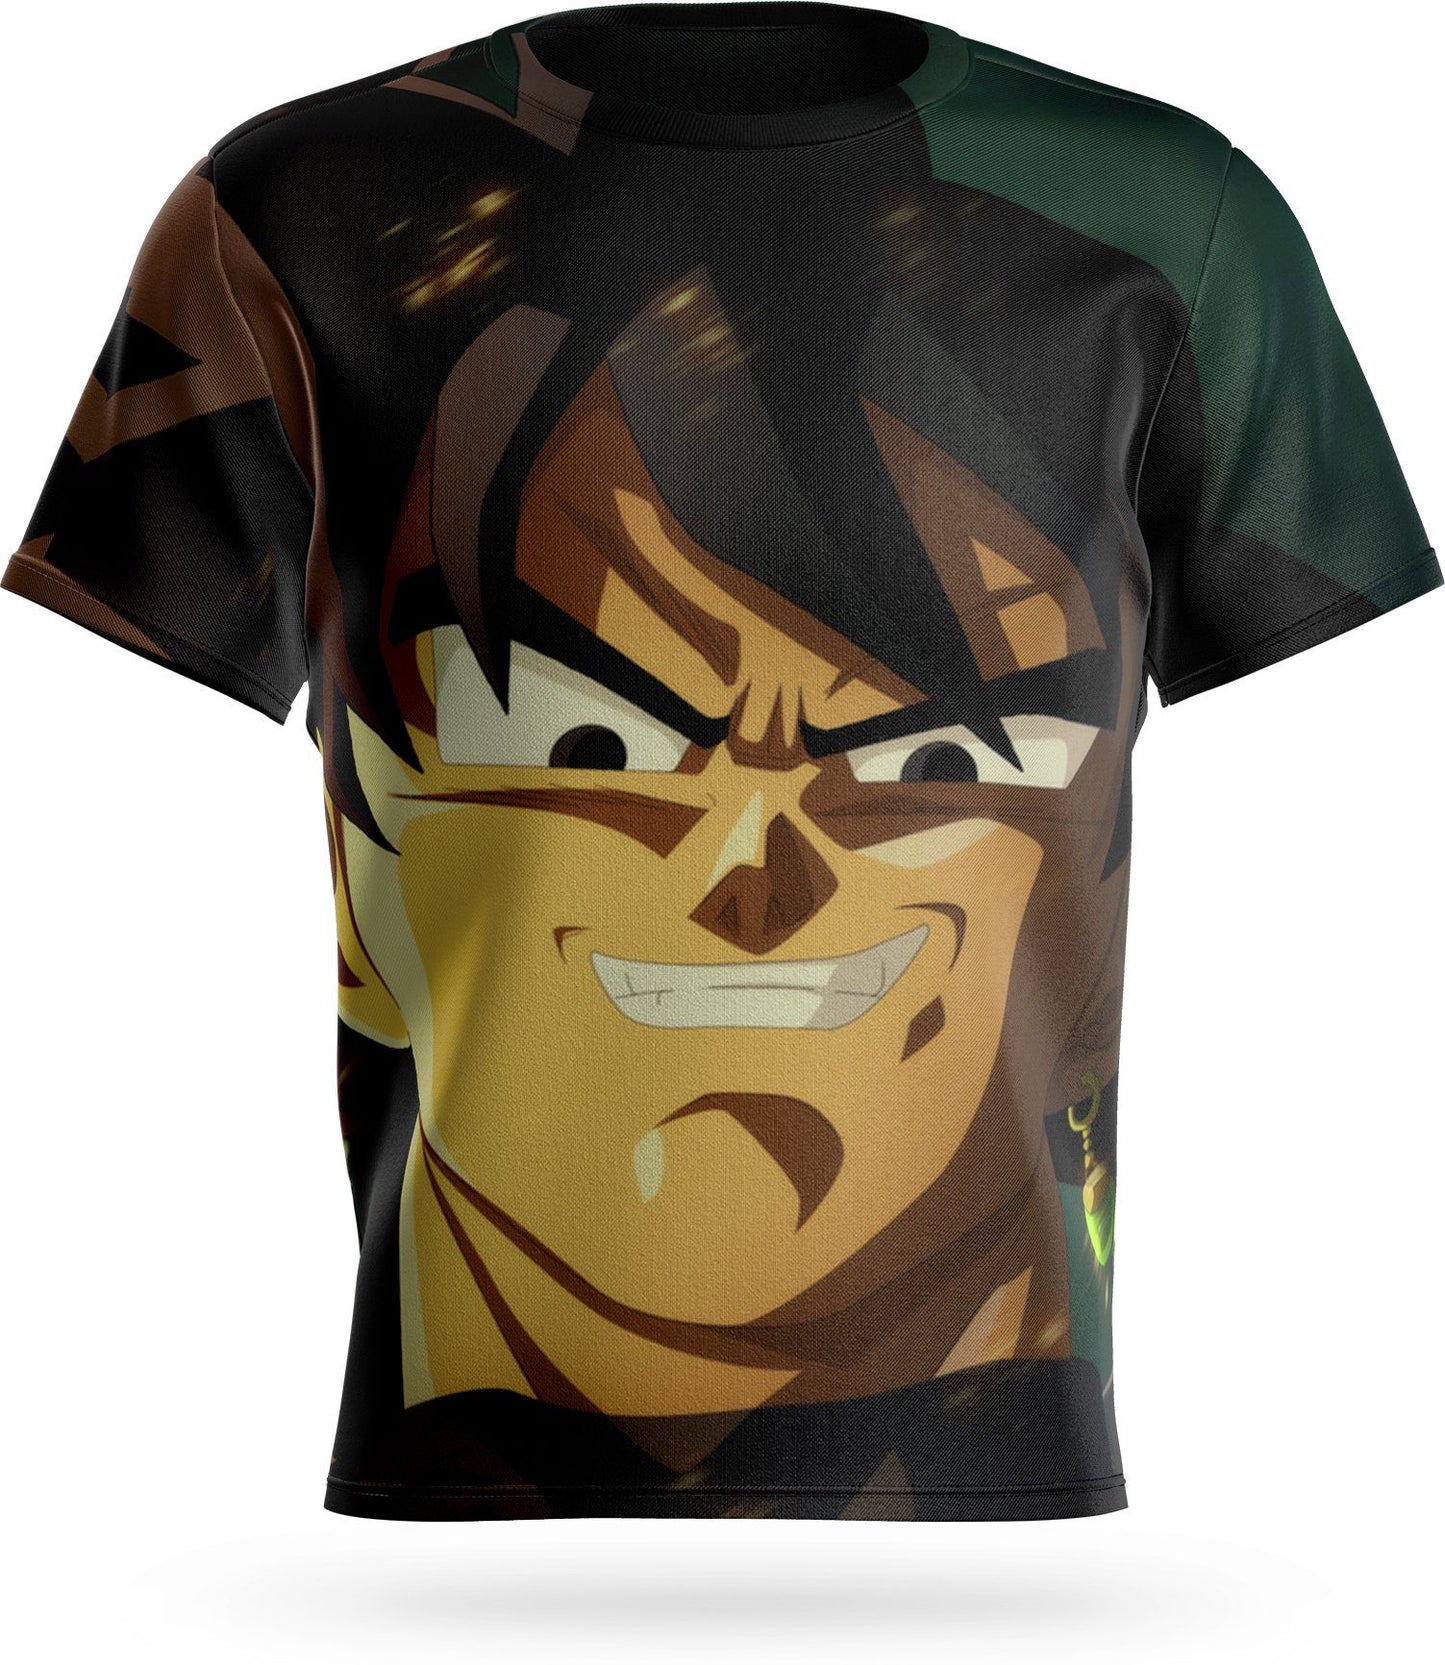 Tee Shirt Zamasu Goku Black